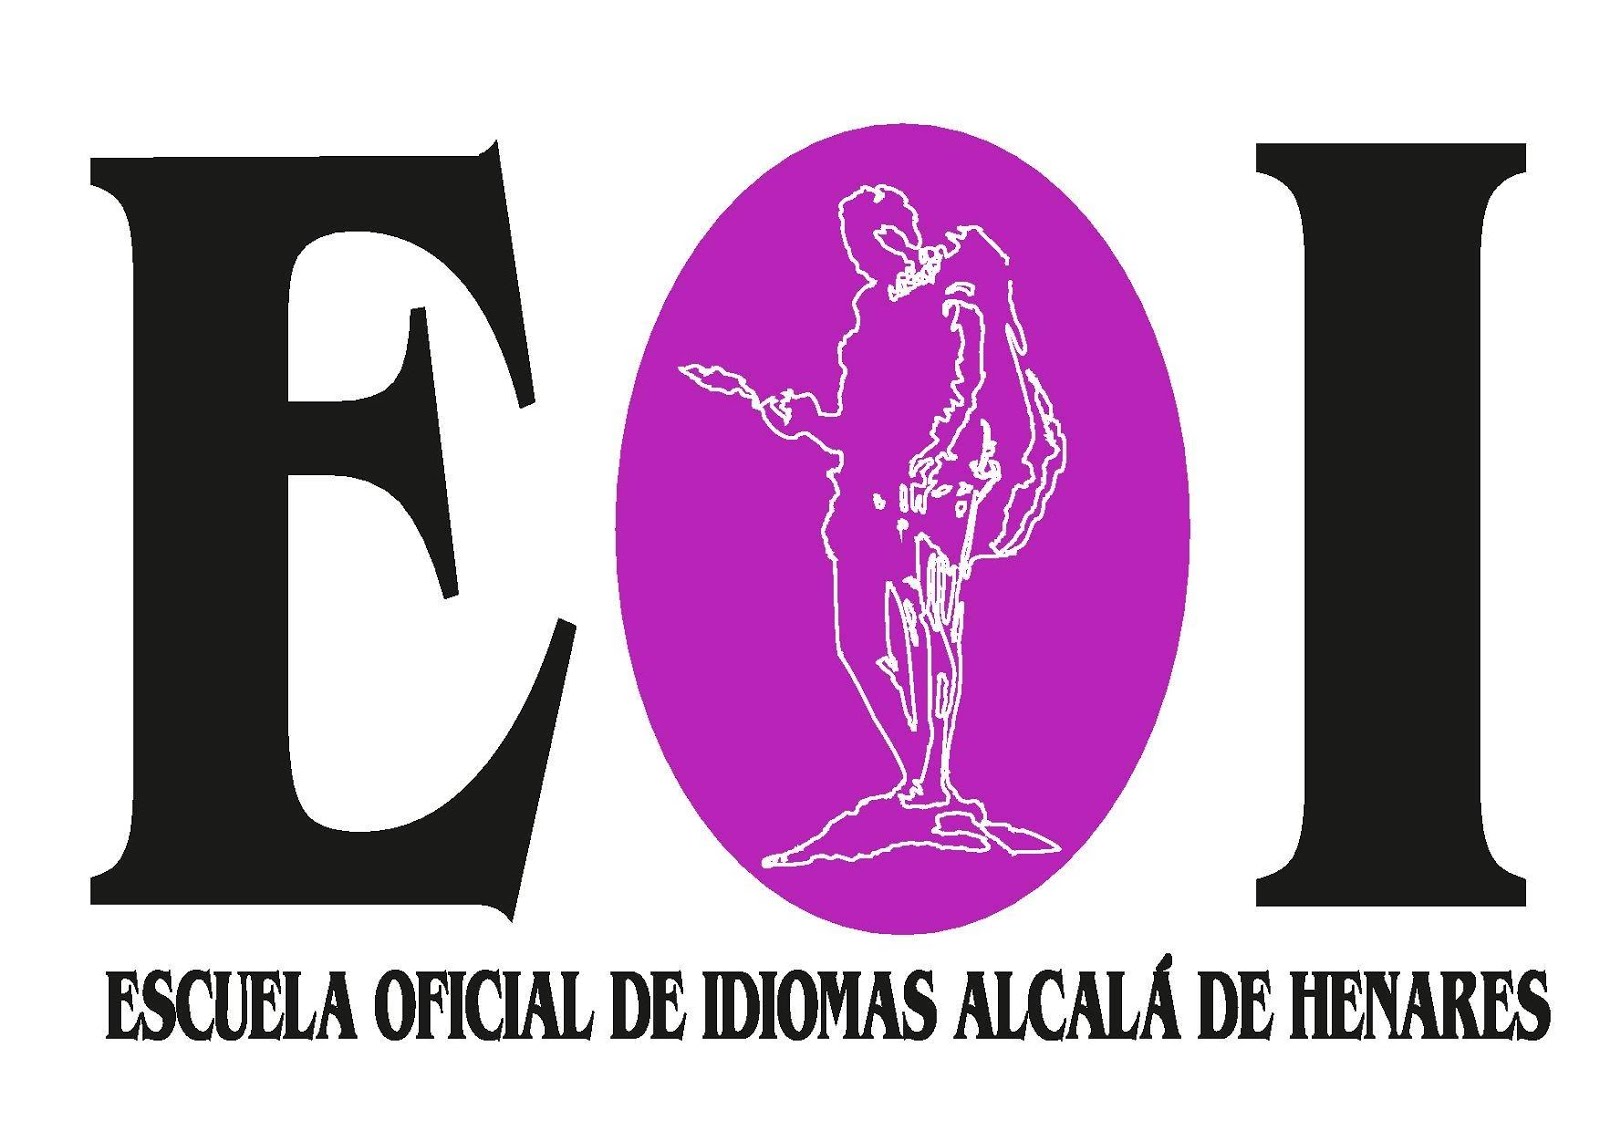 Nuestro logo